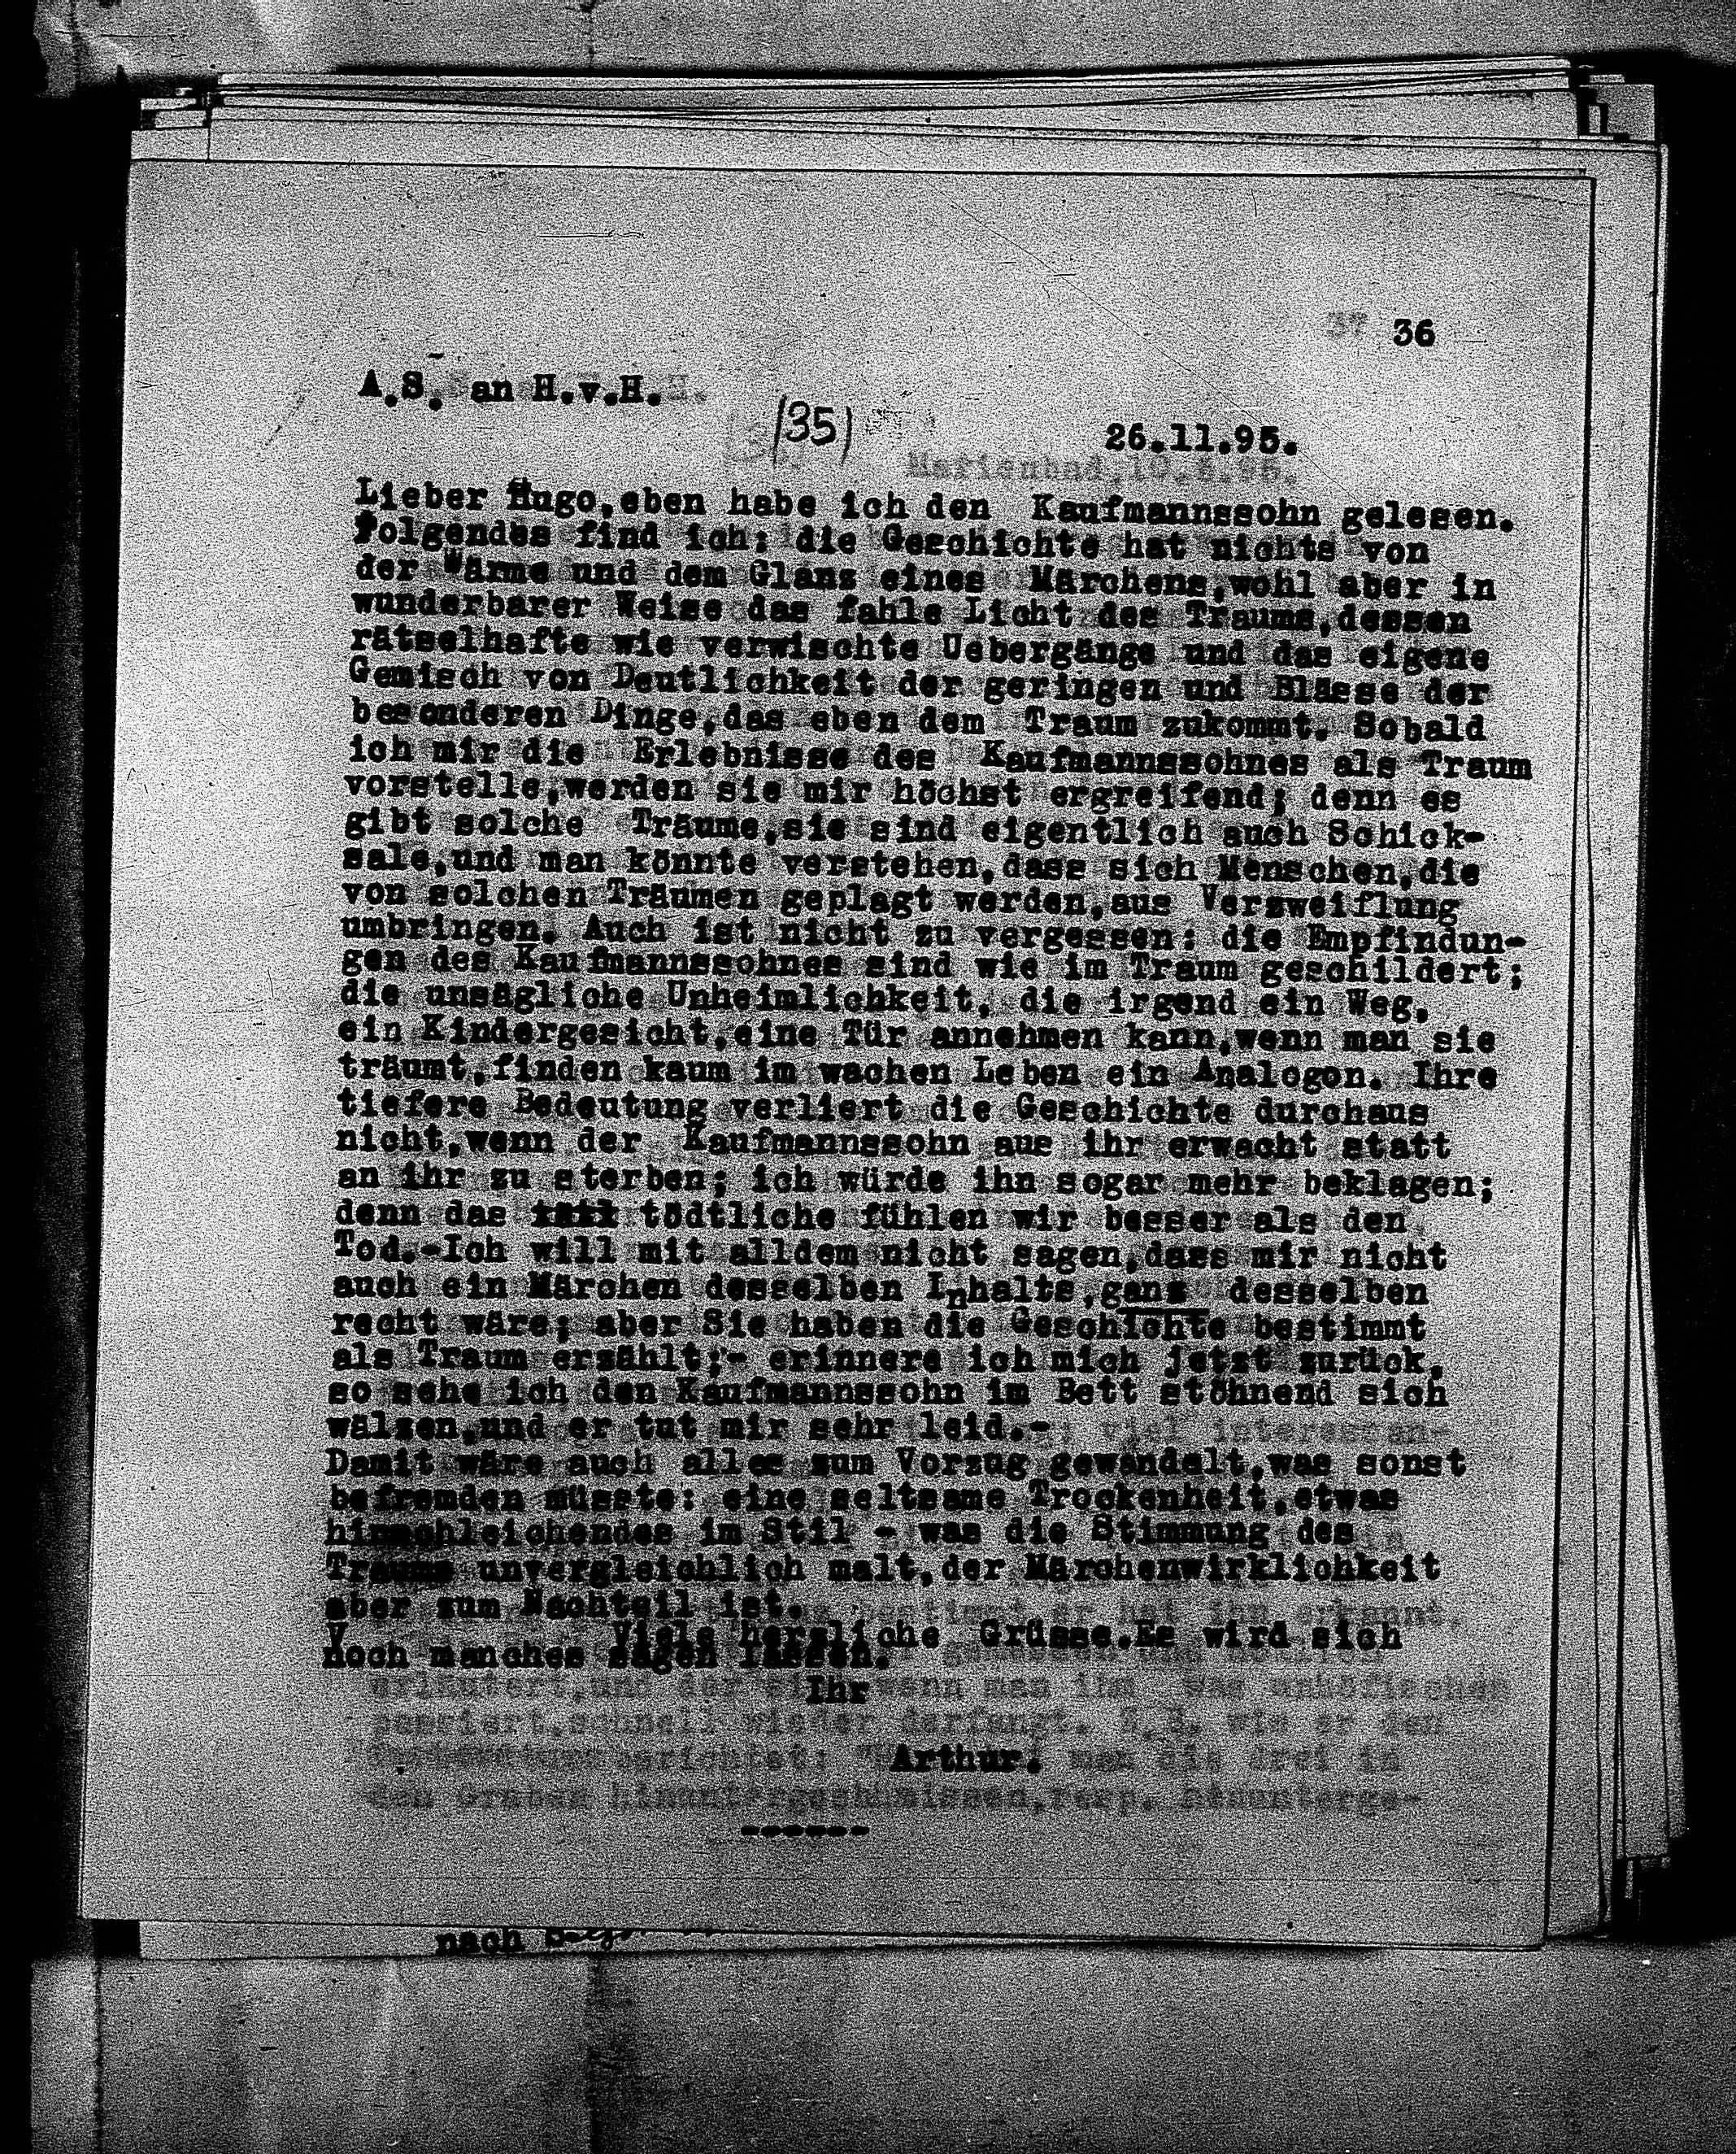 Vorschaubild für Hofmannsthal, Hugo von_AS an HvH Abschrift, HvH an AS, Originale (Mikrofilm 38), Seite 39